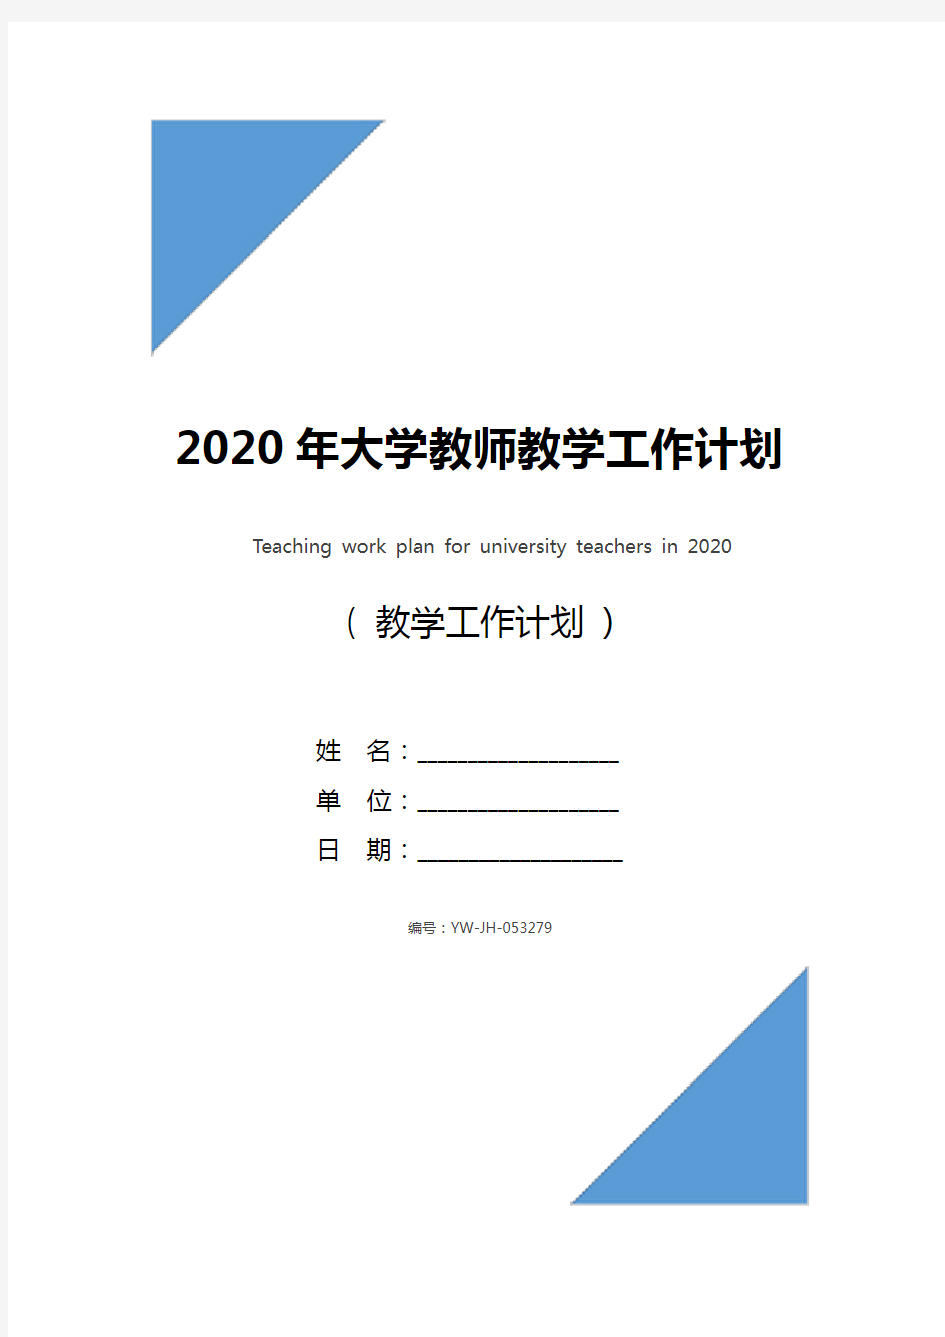 2020年大学教师教学工作计划